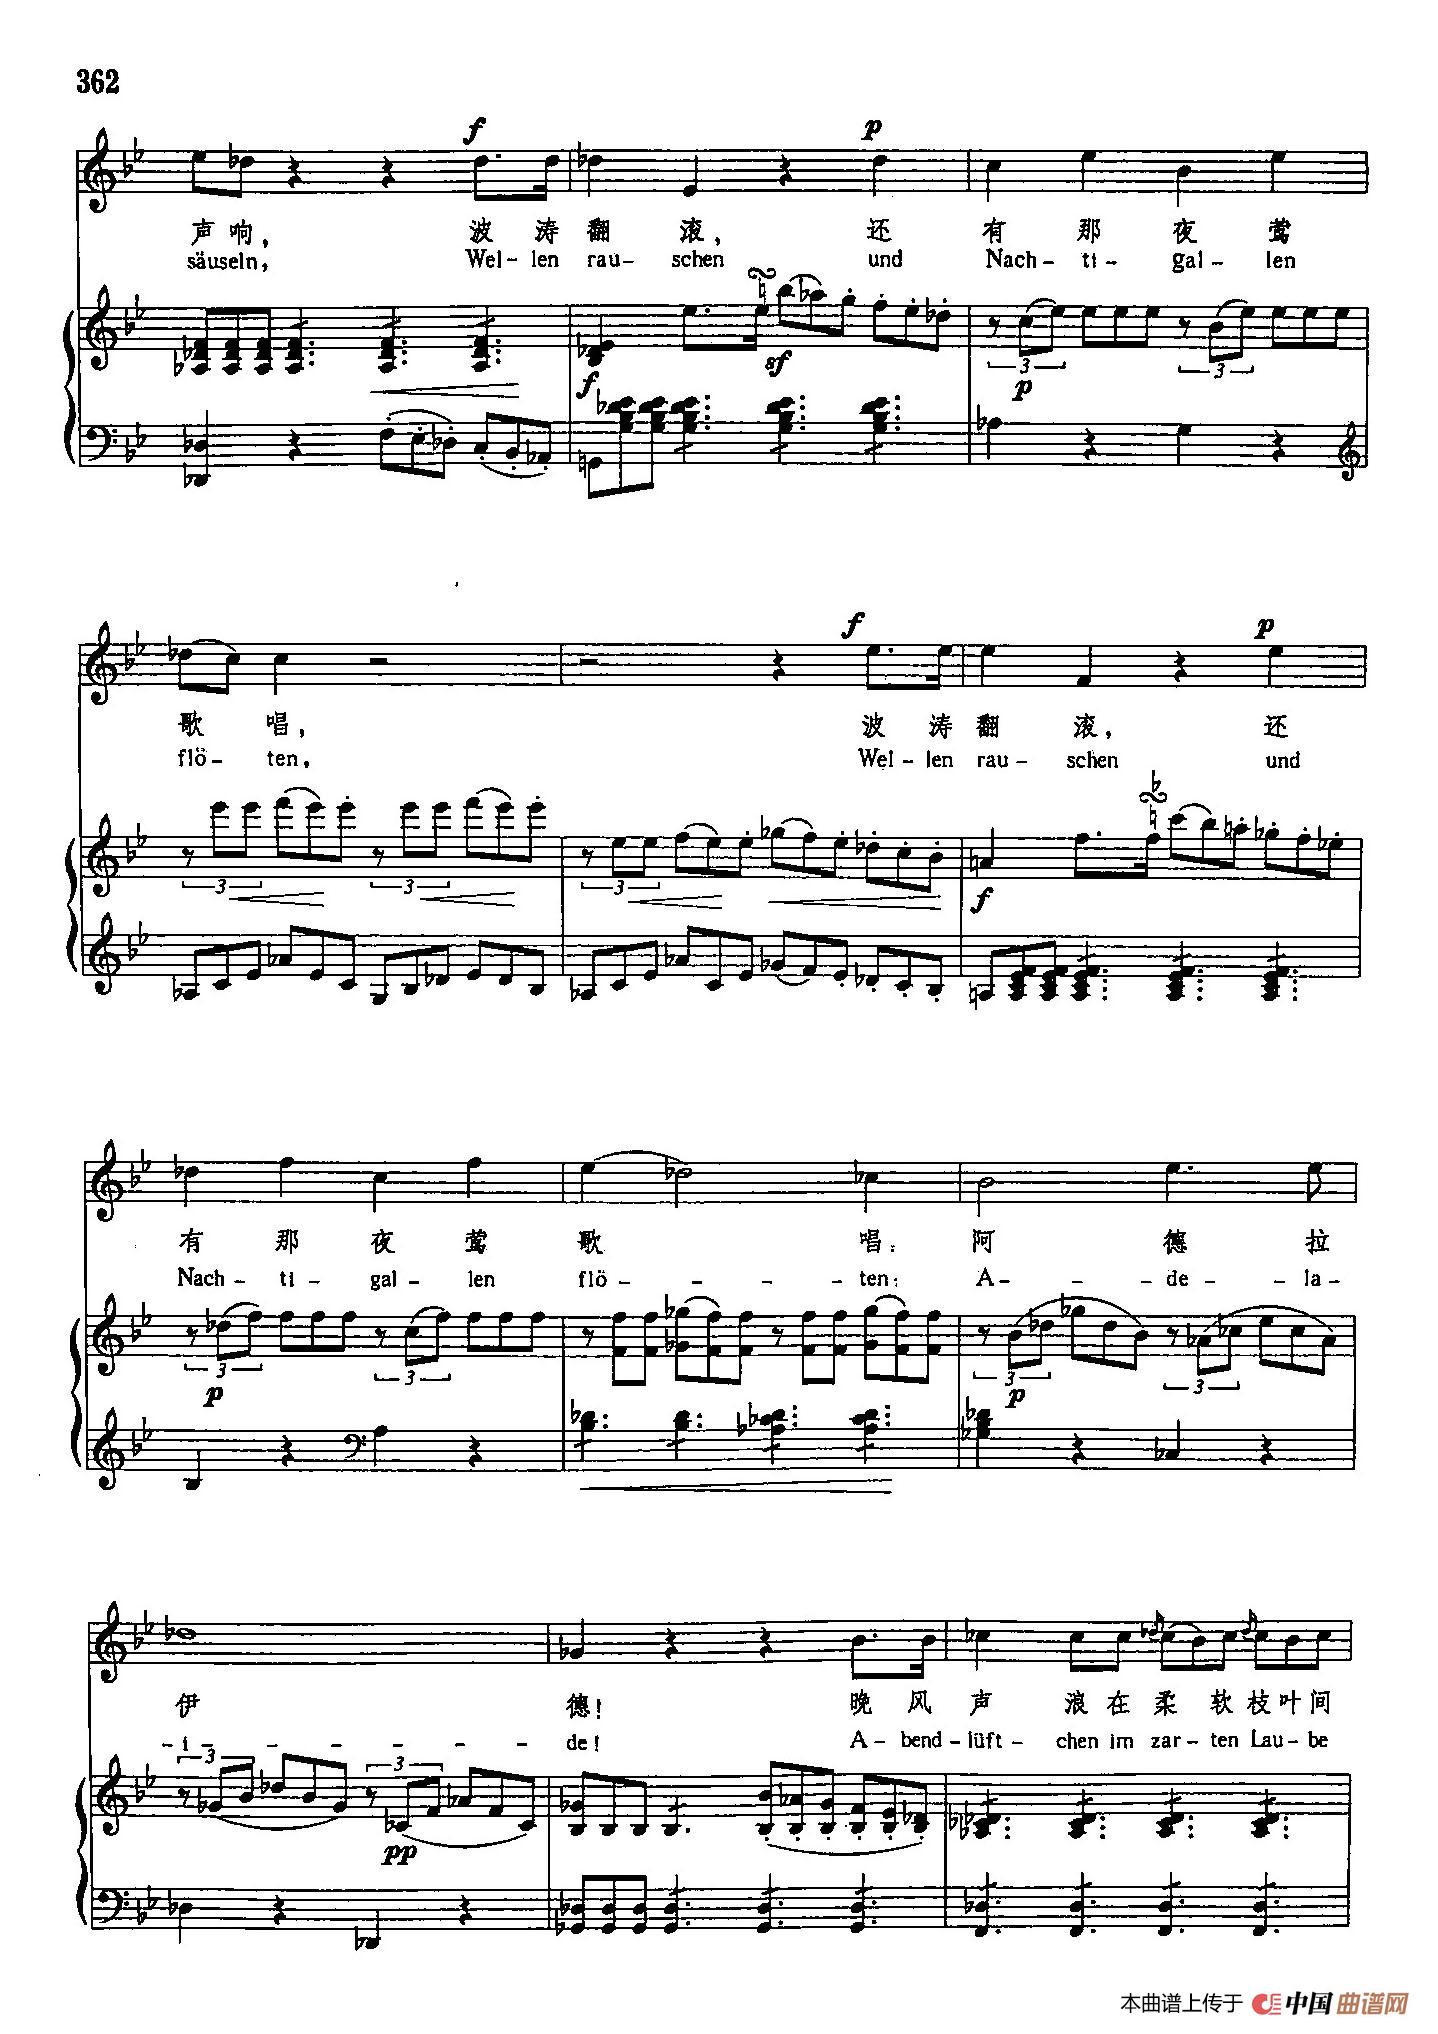 声乐教学曲库3-[德]75阿德拉伊得（正谱） (1)_原文件名：声乐教学曲库3-[德]75阿德拉伊得（正谱）5.jpg